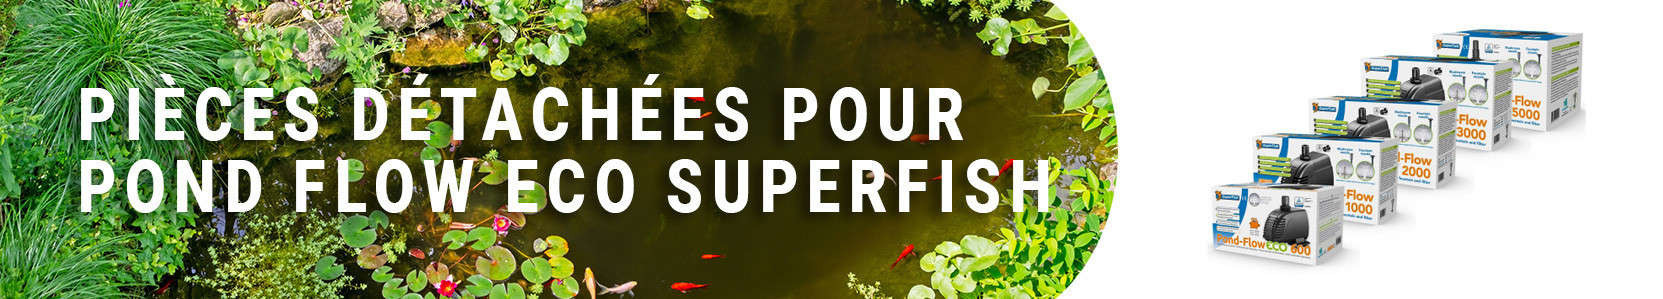 Pièces détachées pour Pond Flow Eco Superfish